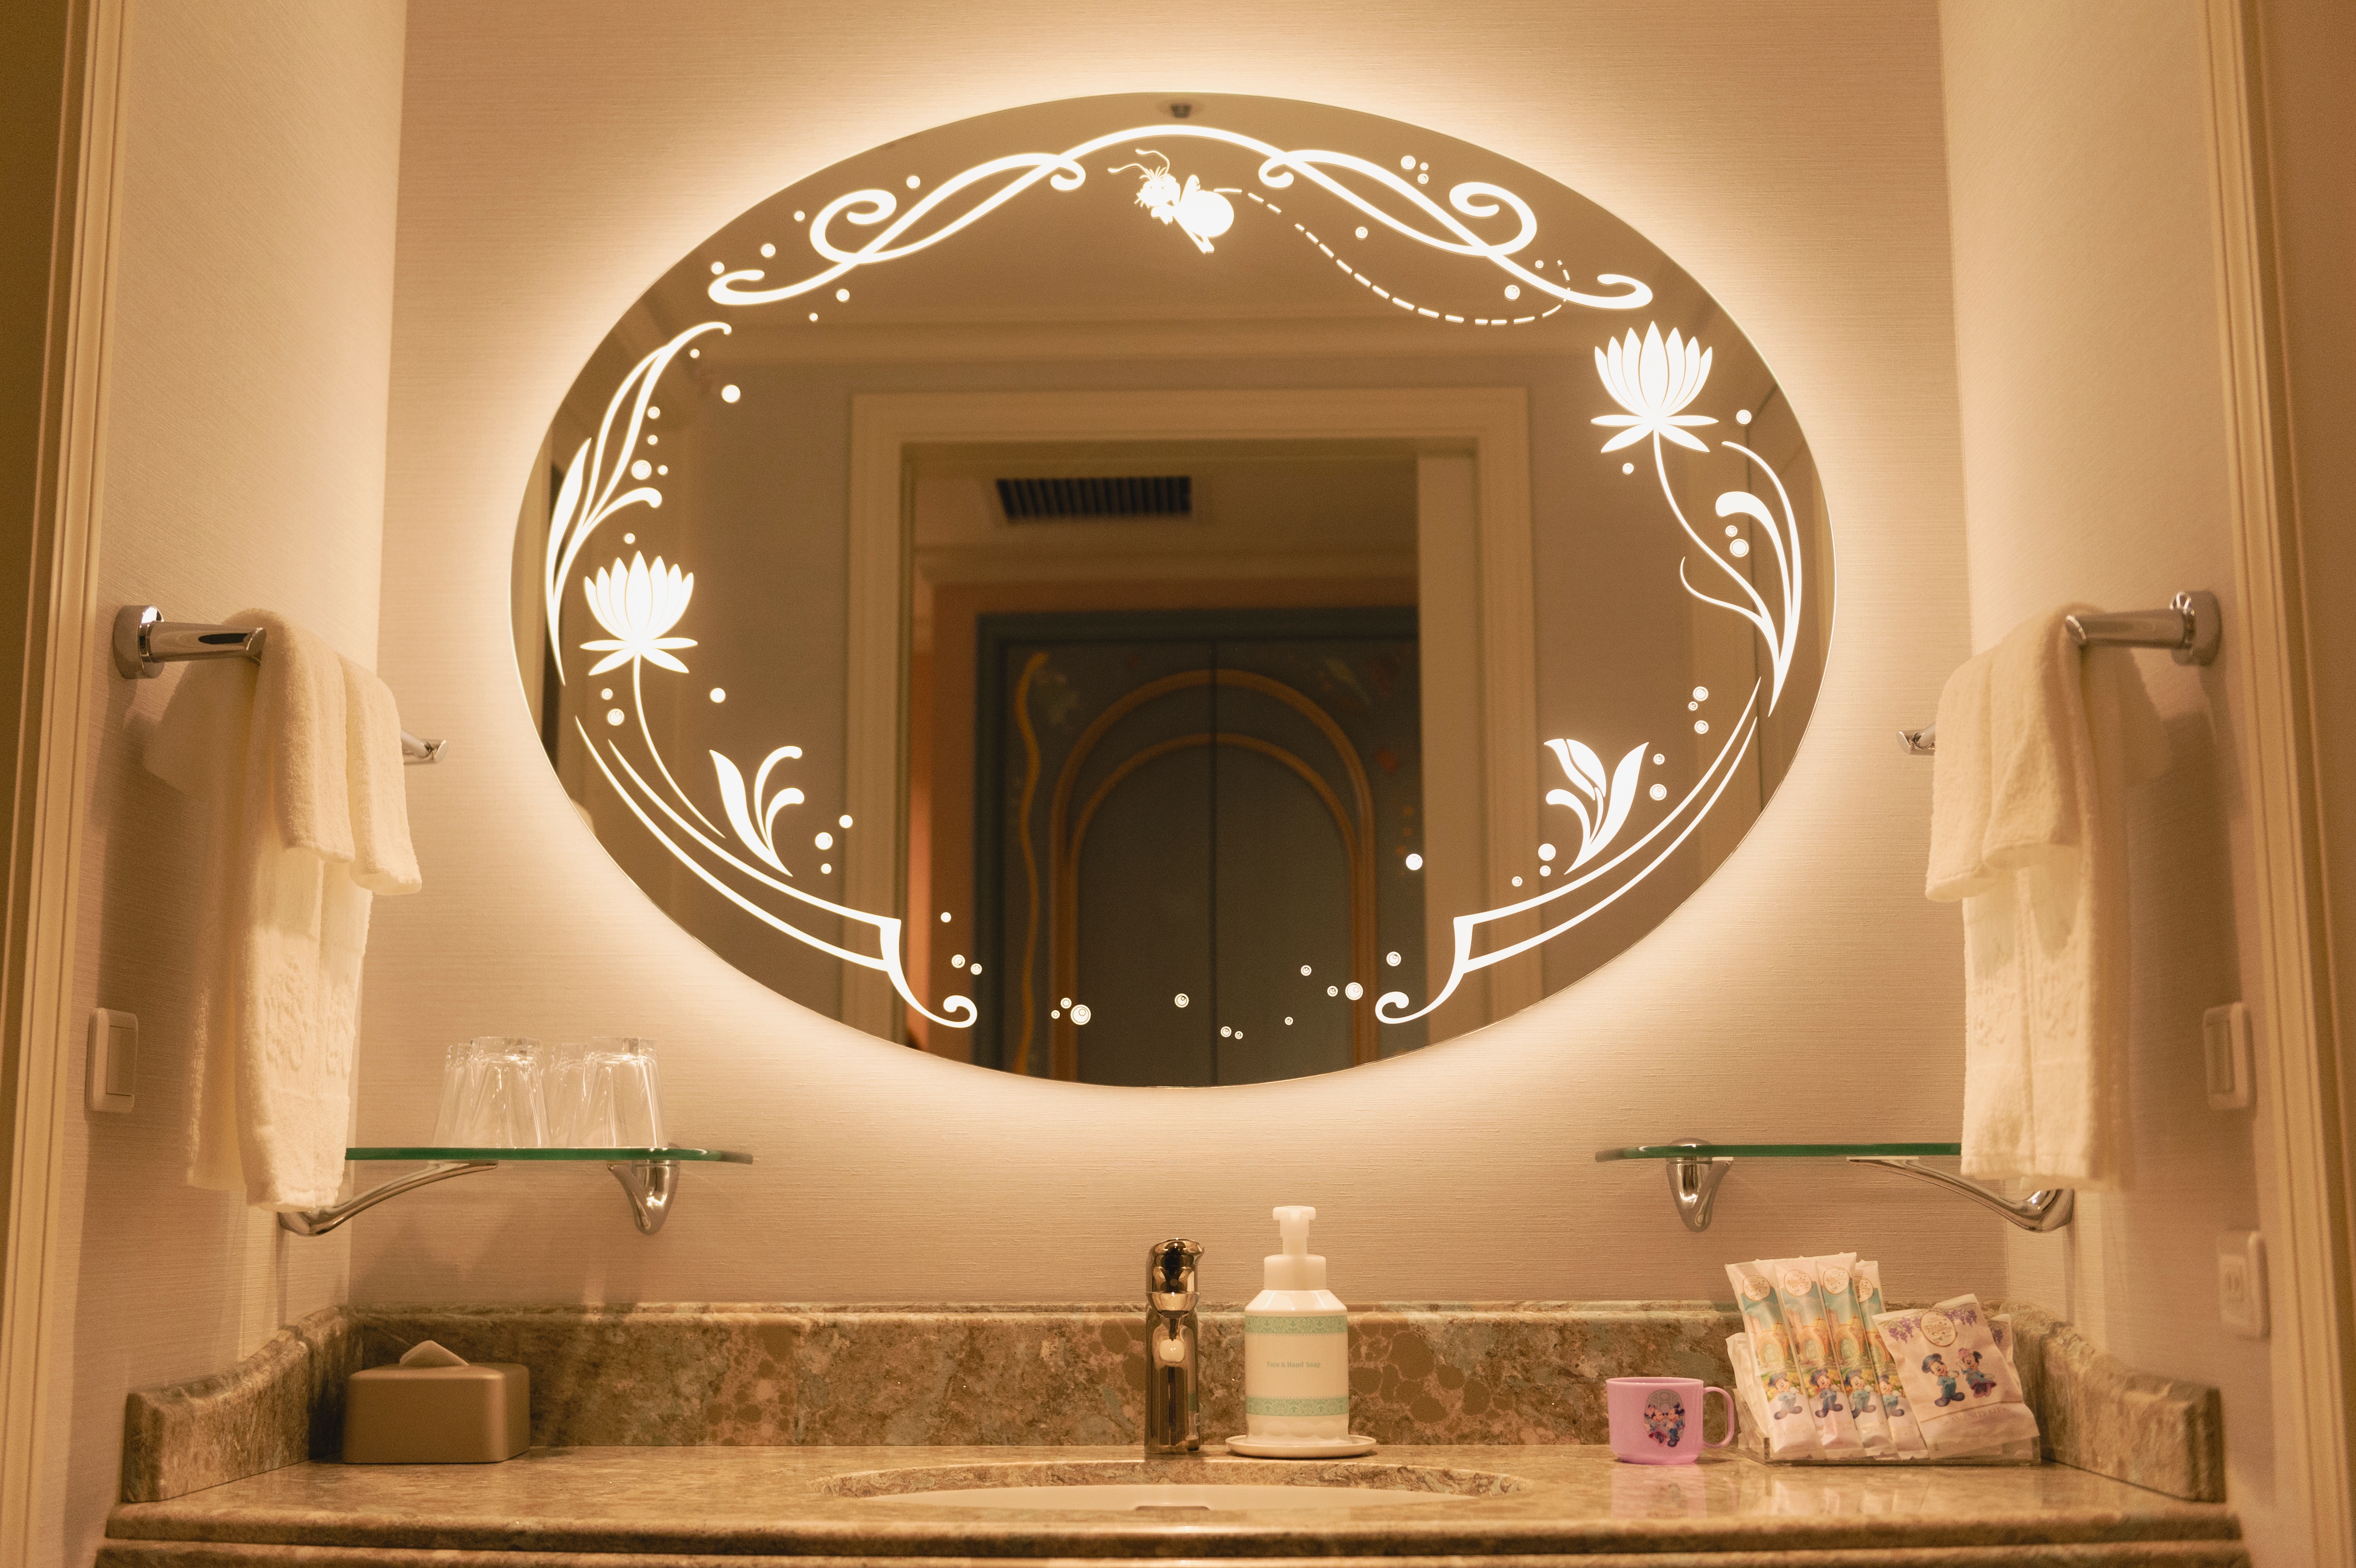 洗面所の鏡は照明にもこだわりが。プリンセス気分を味わえる。